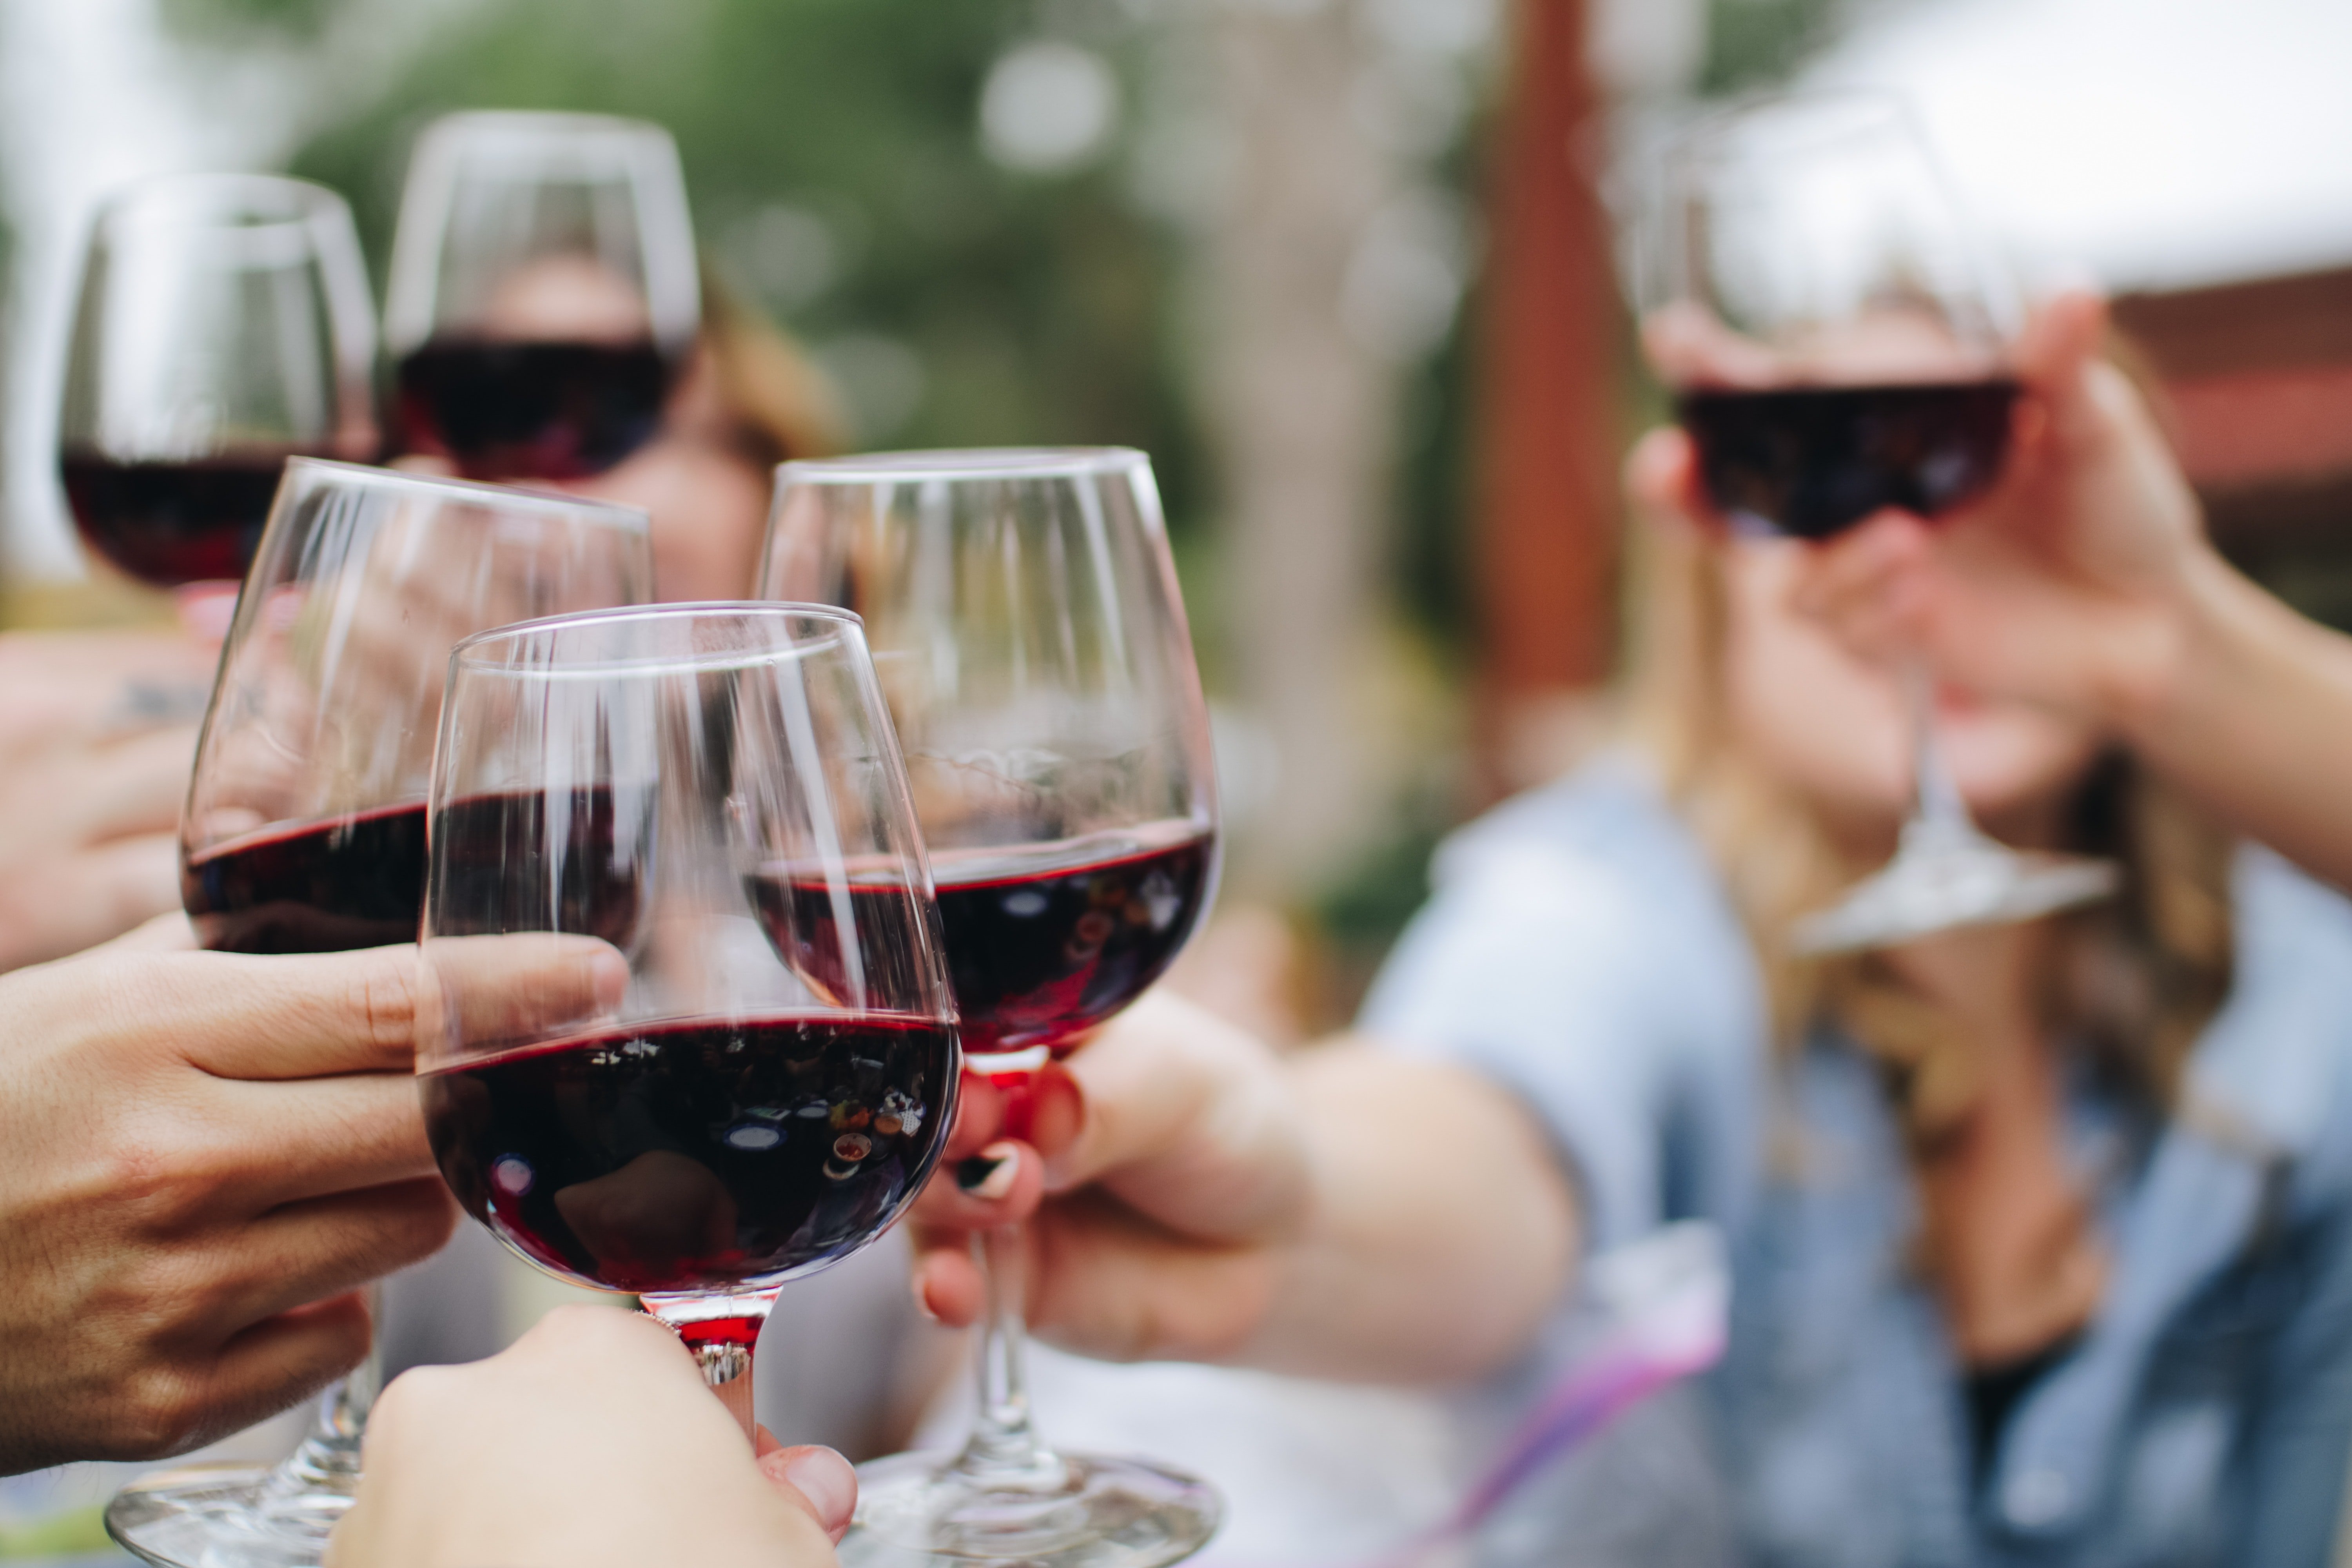 El vino tinto de Rioja más vendido en el Gourmet de El Corte Inglés es una edición limitada de 15,19 euros